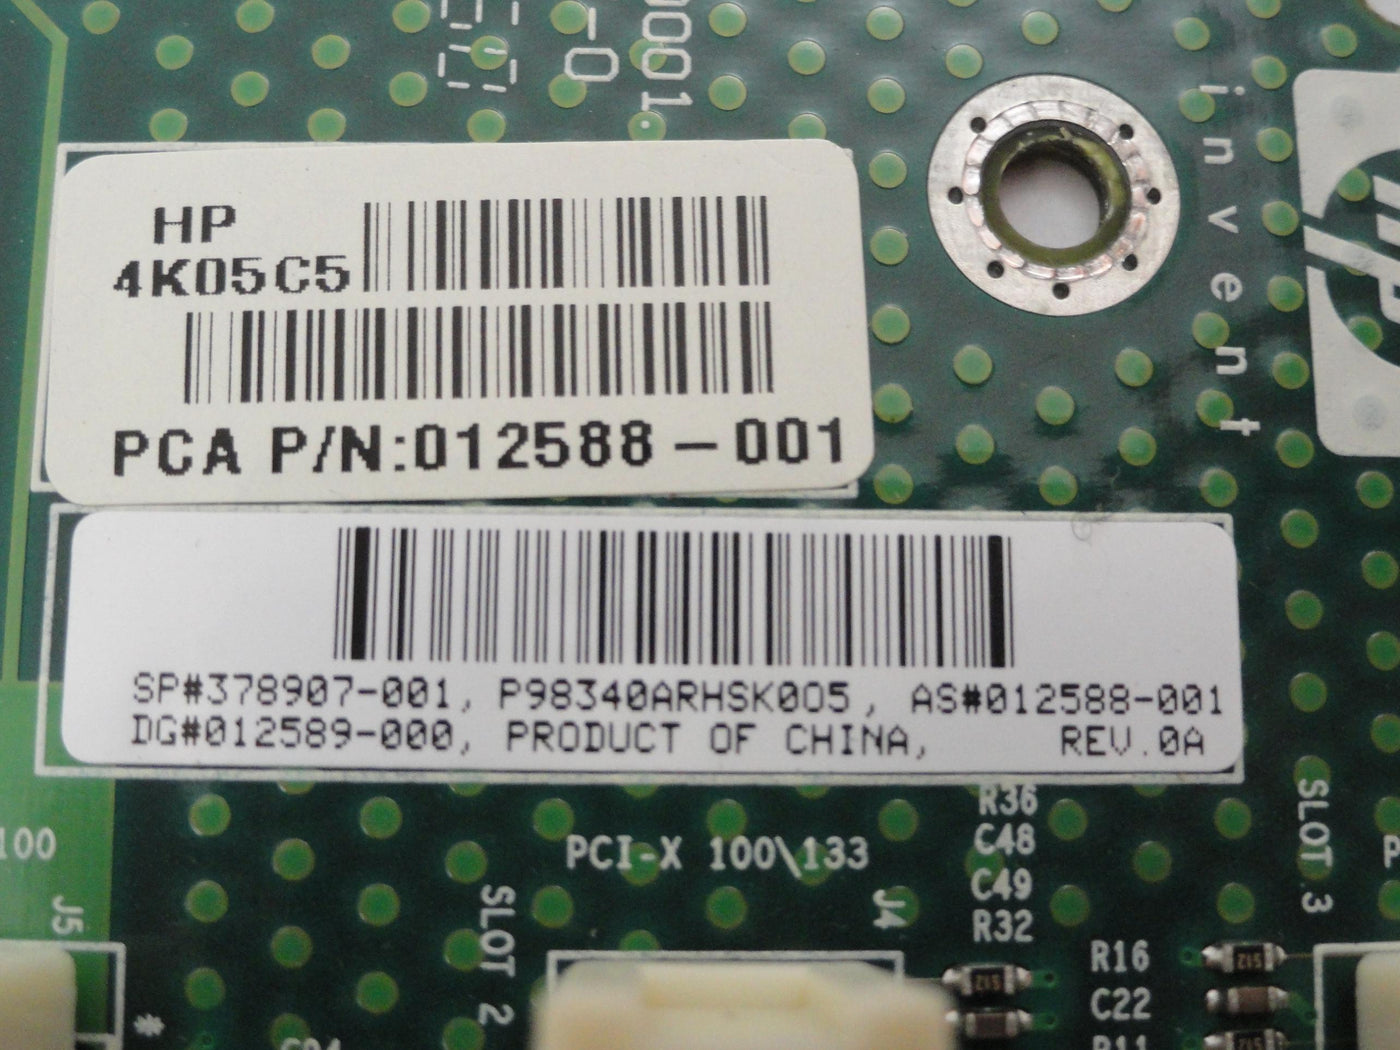 MC6780_378907-001_HP Three Port PCI Riser Board - Image3